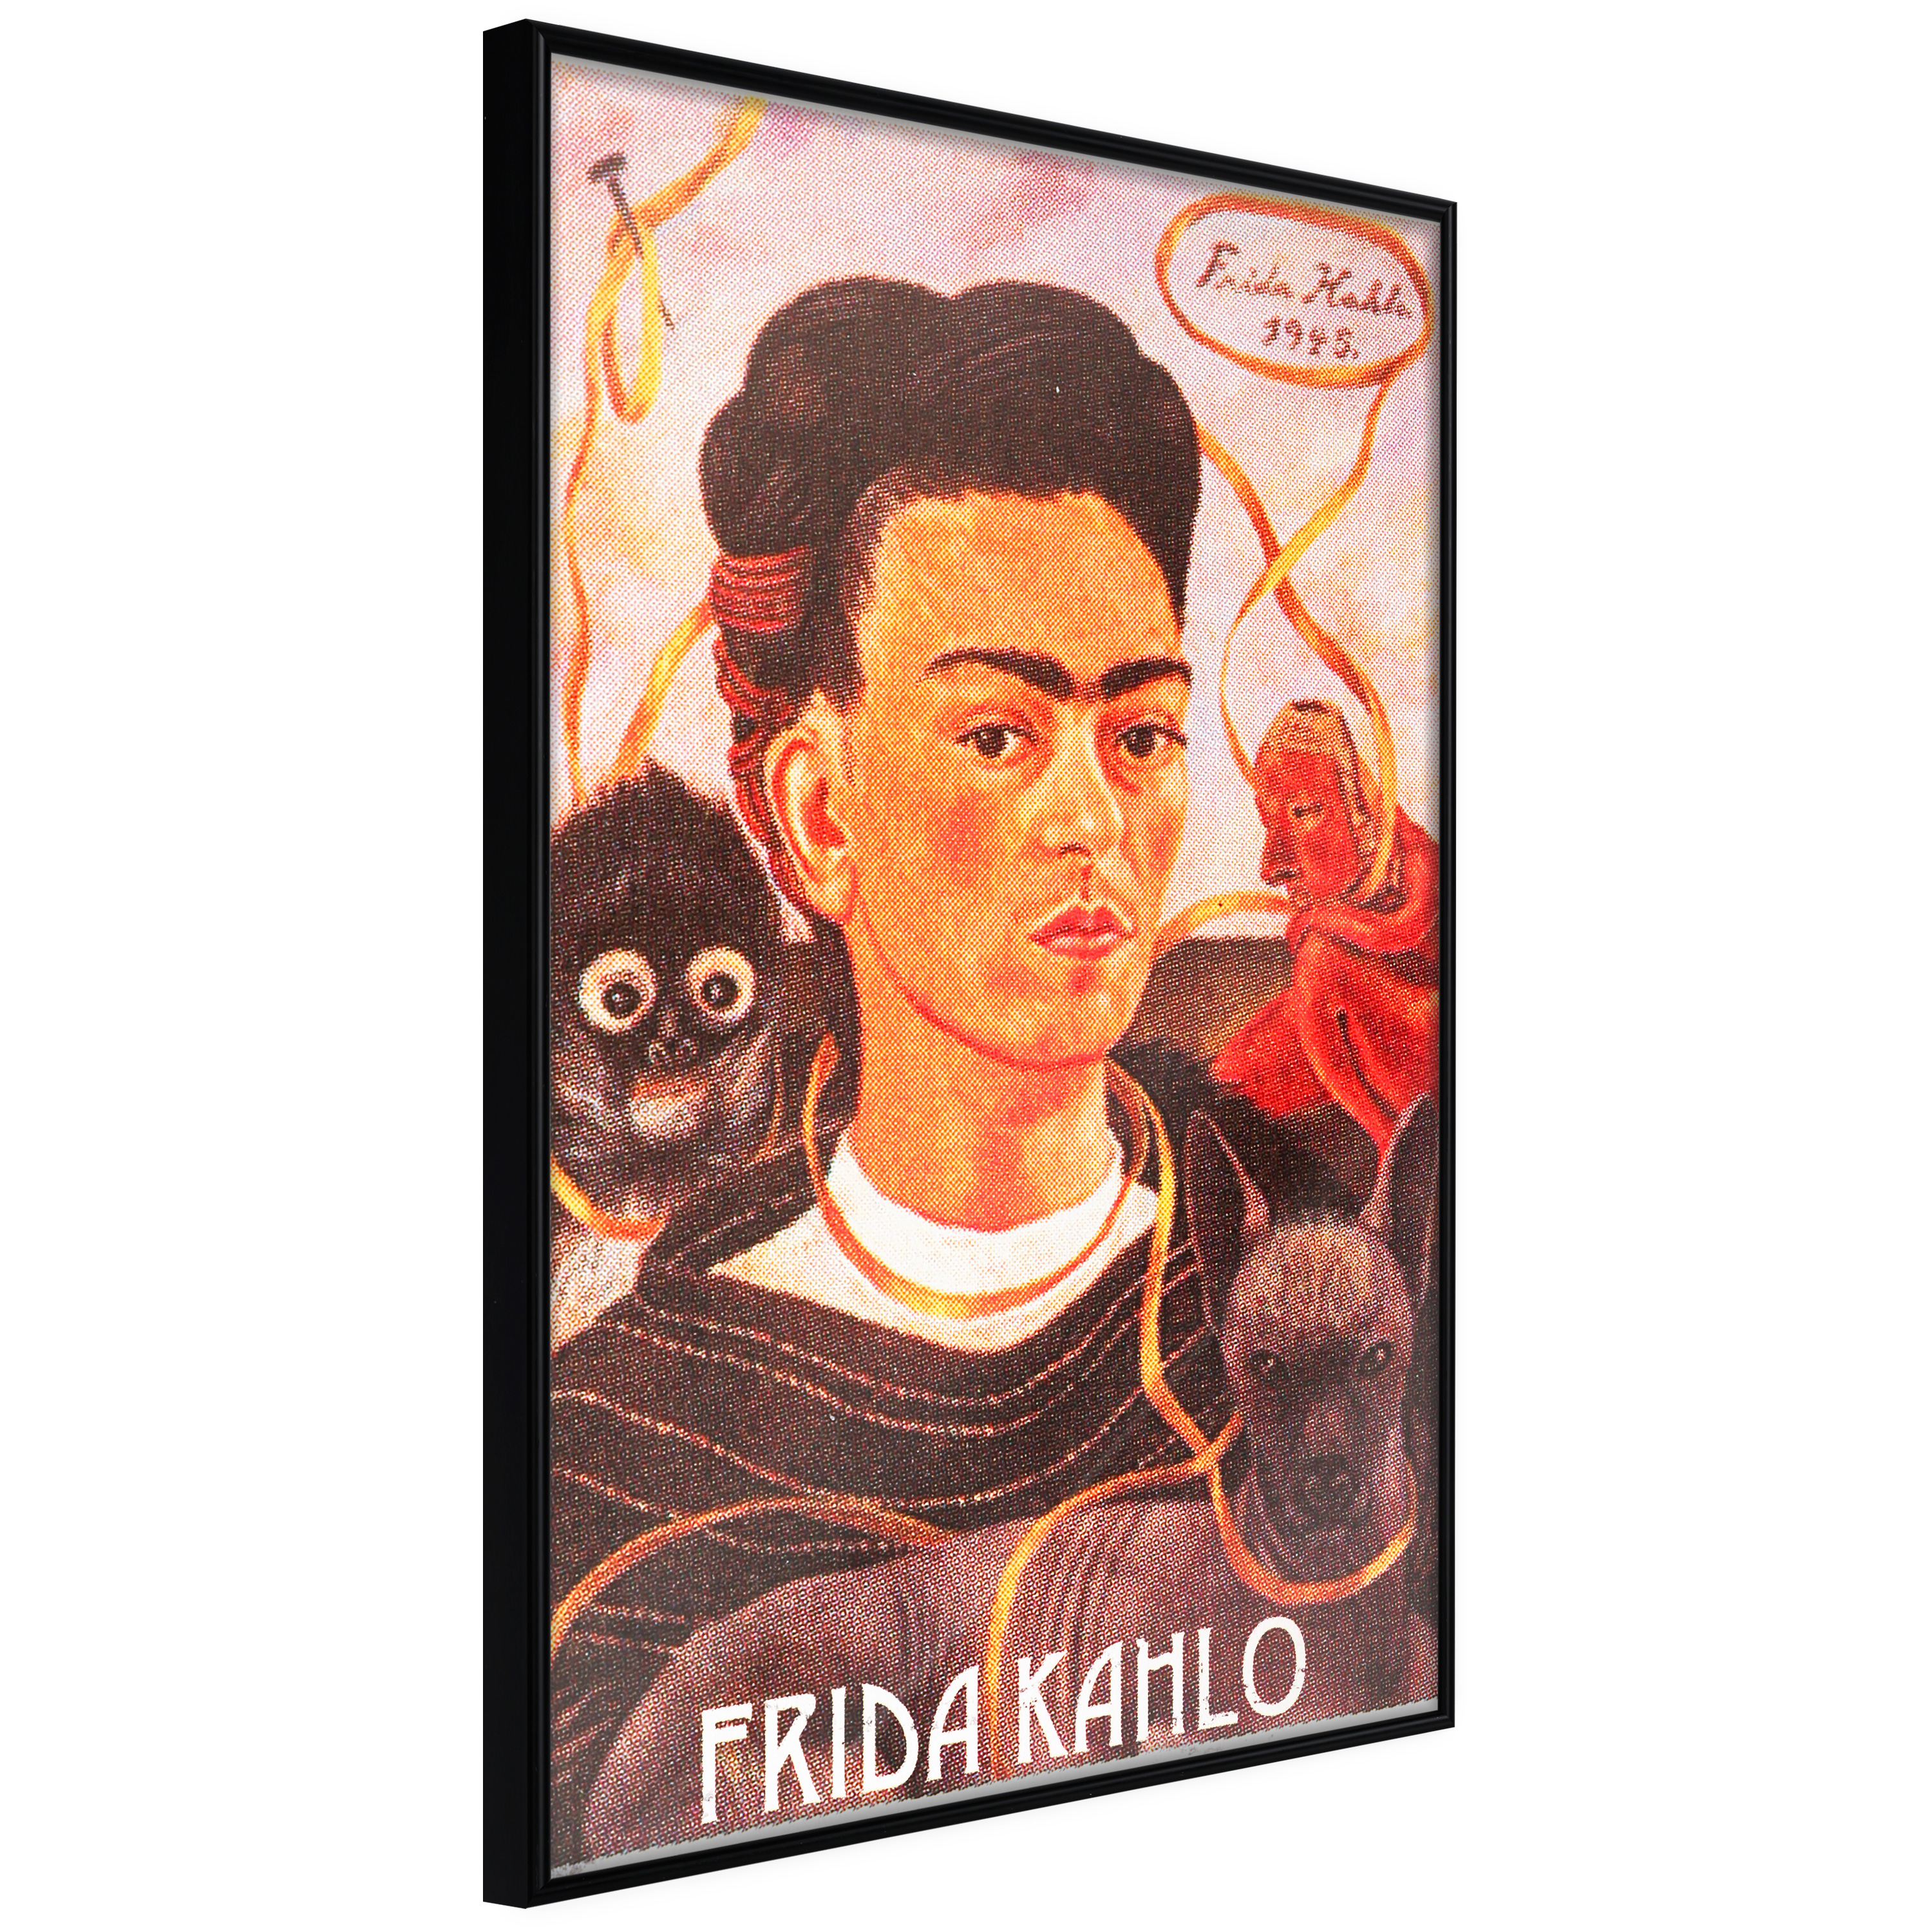 Poster - Frida Khalo – Self-Portrait - 20x30